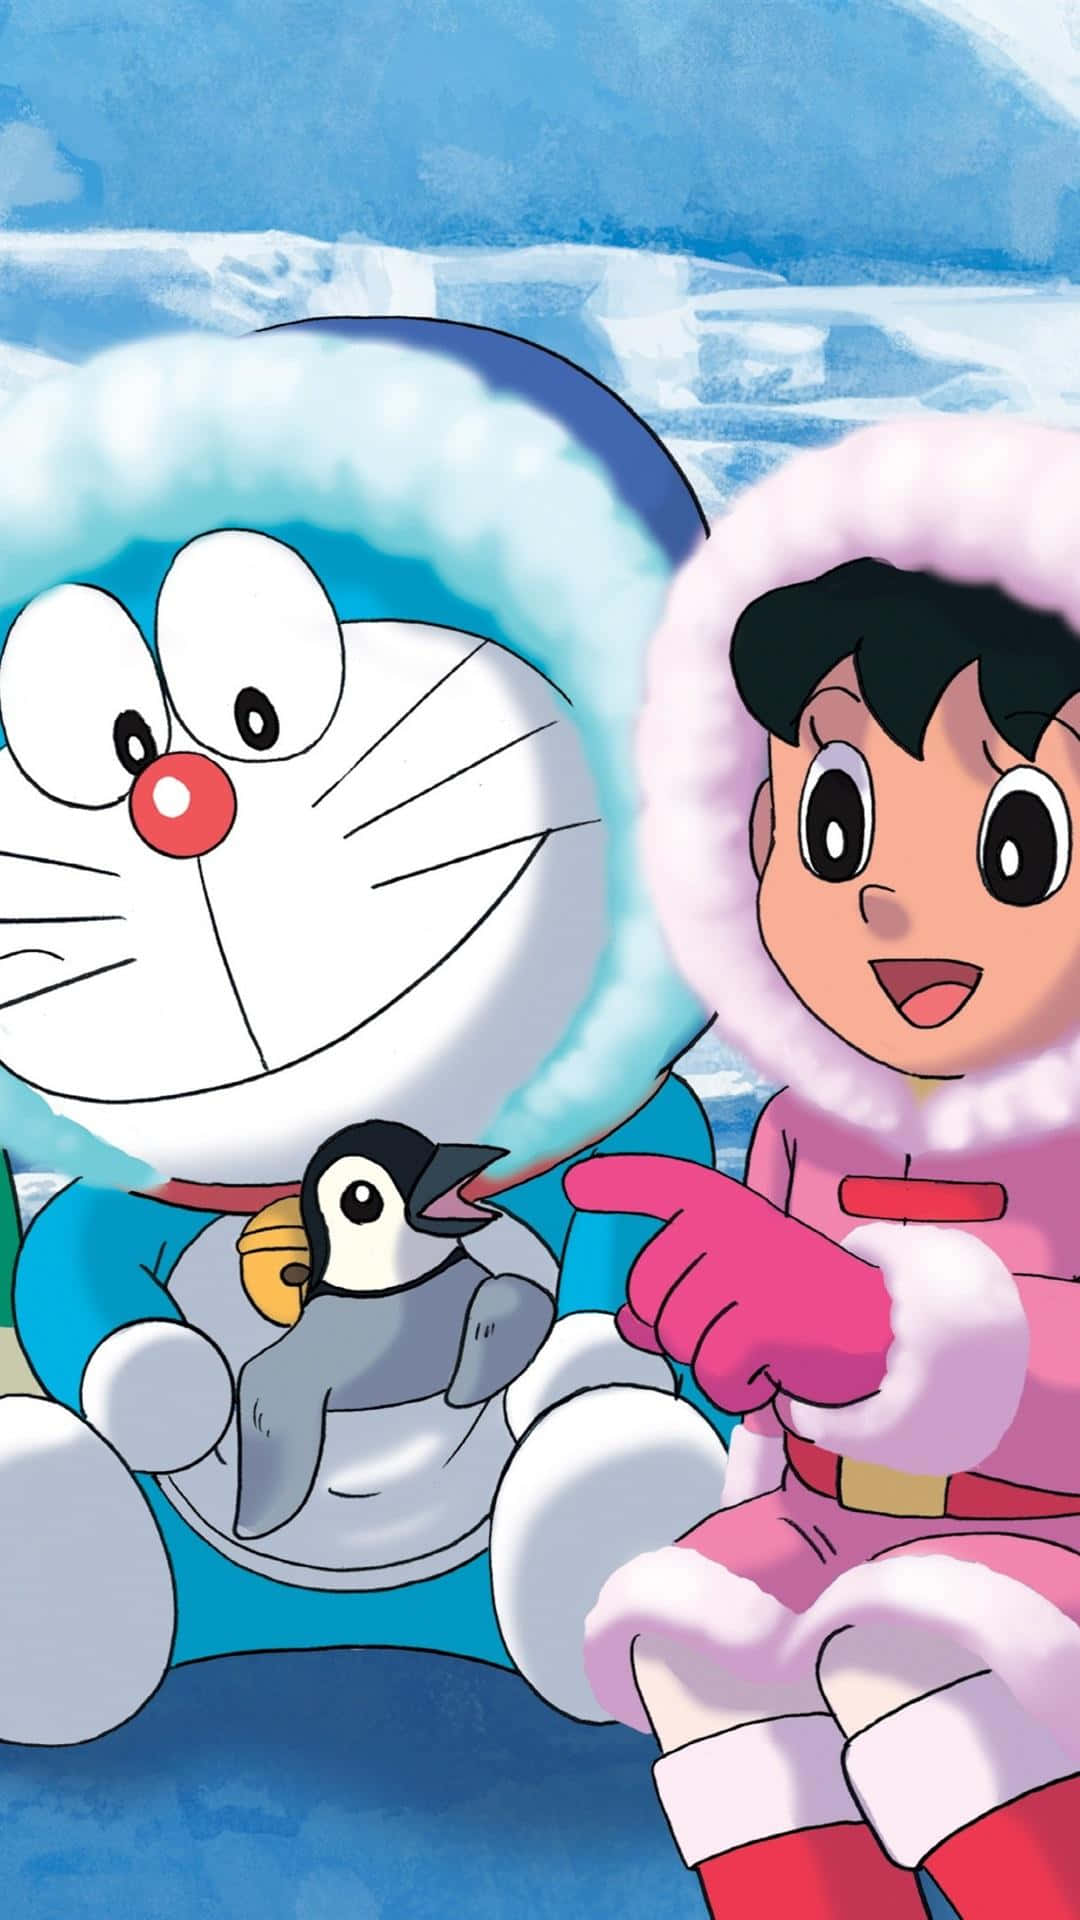 ¡emocionantesaventuras Te Esperan En El Mundo Mágico De Doraemon!